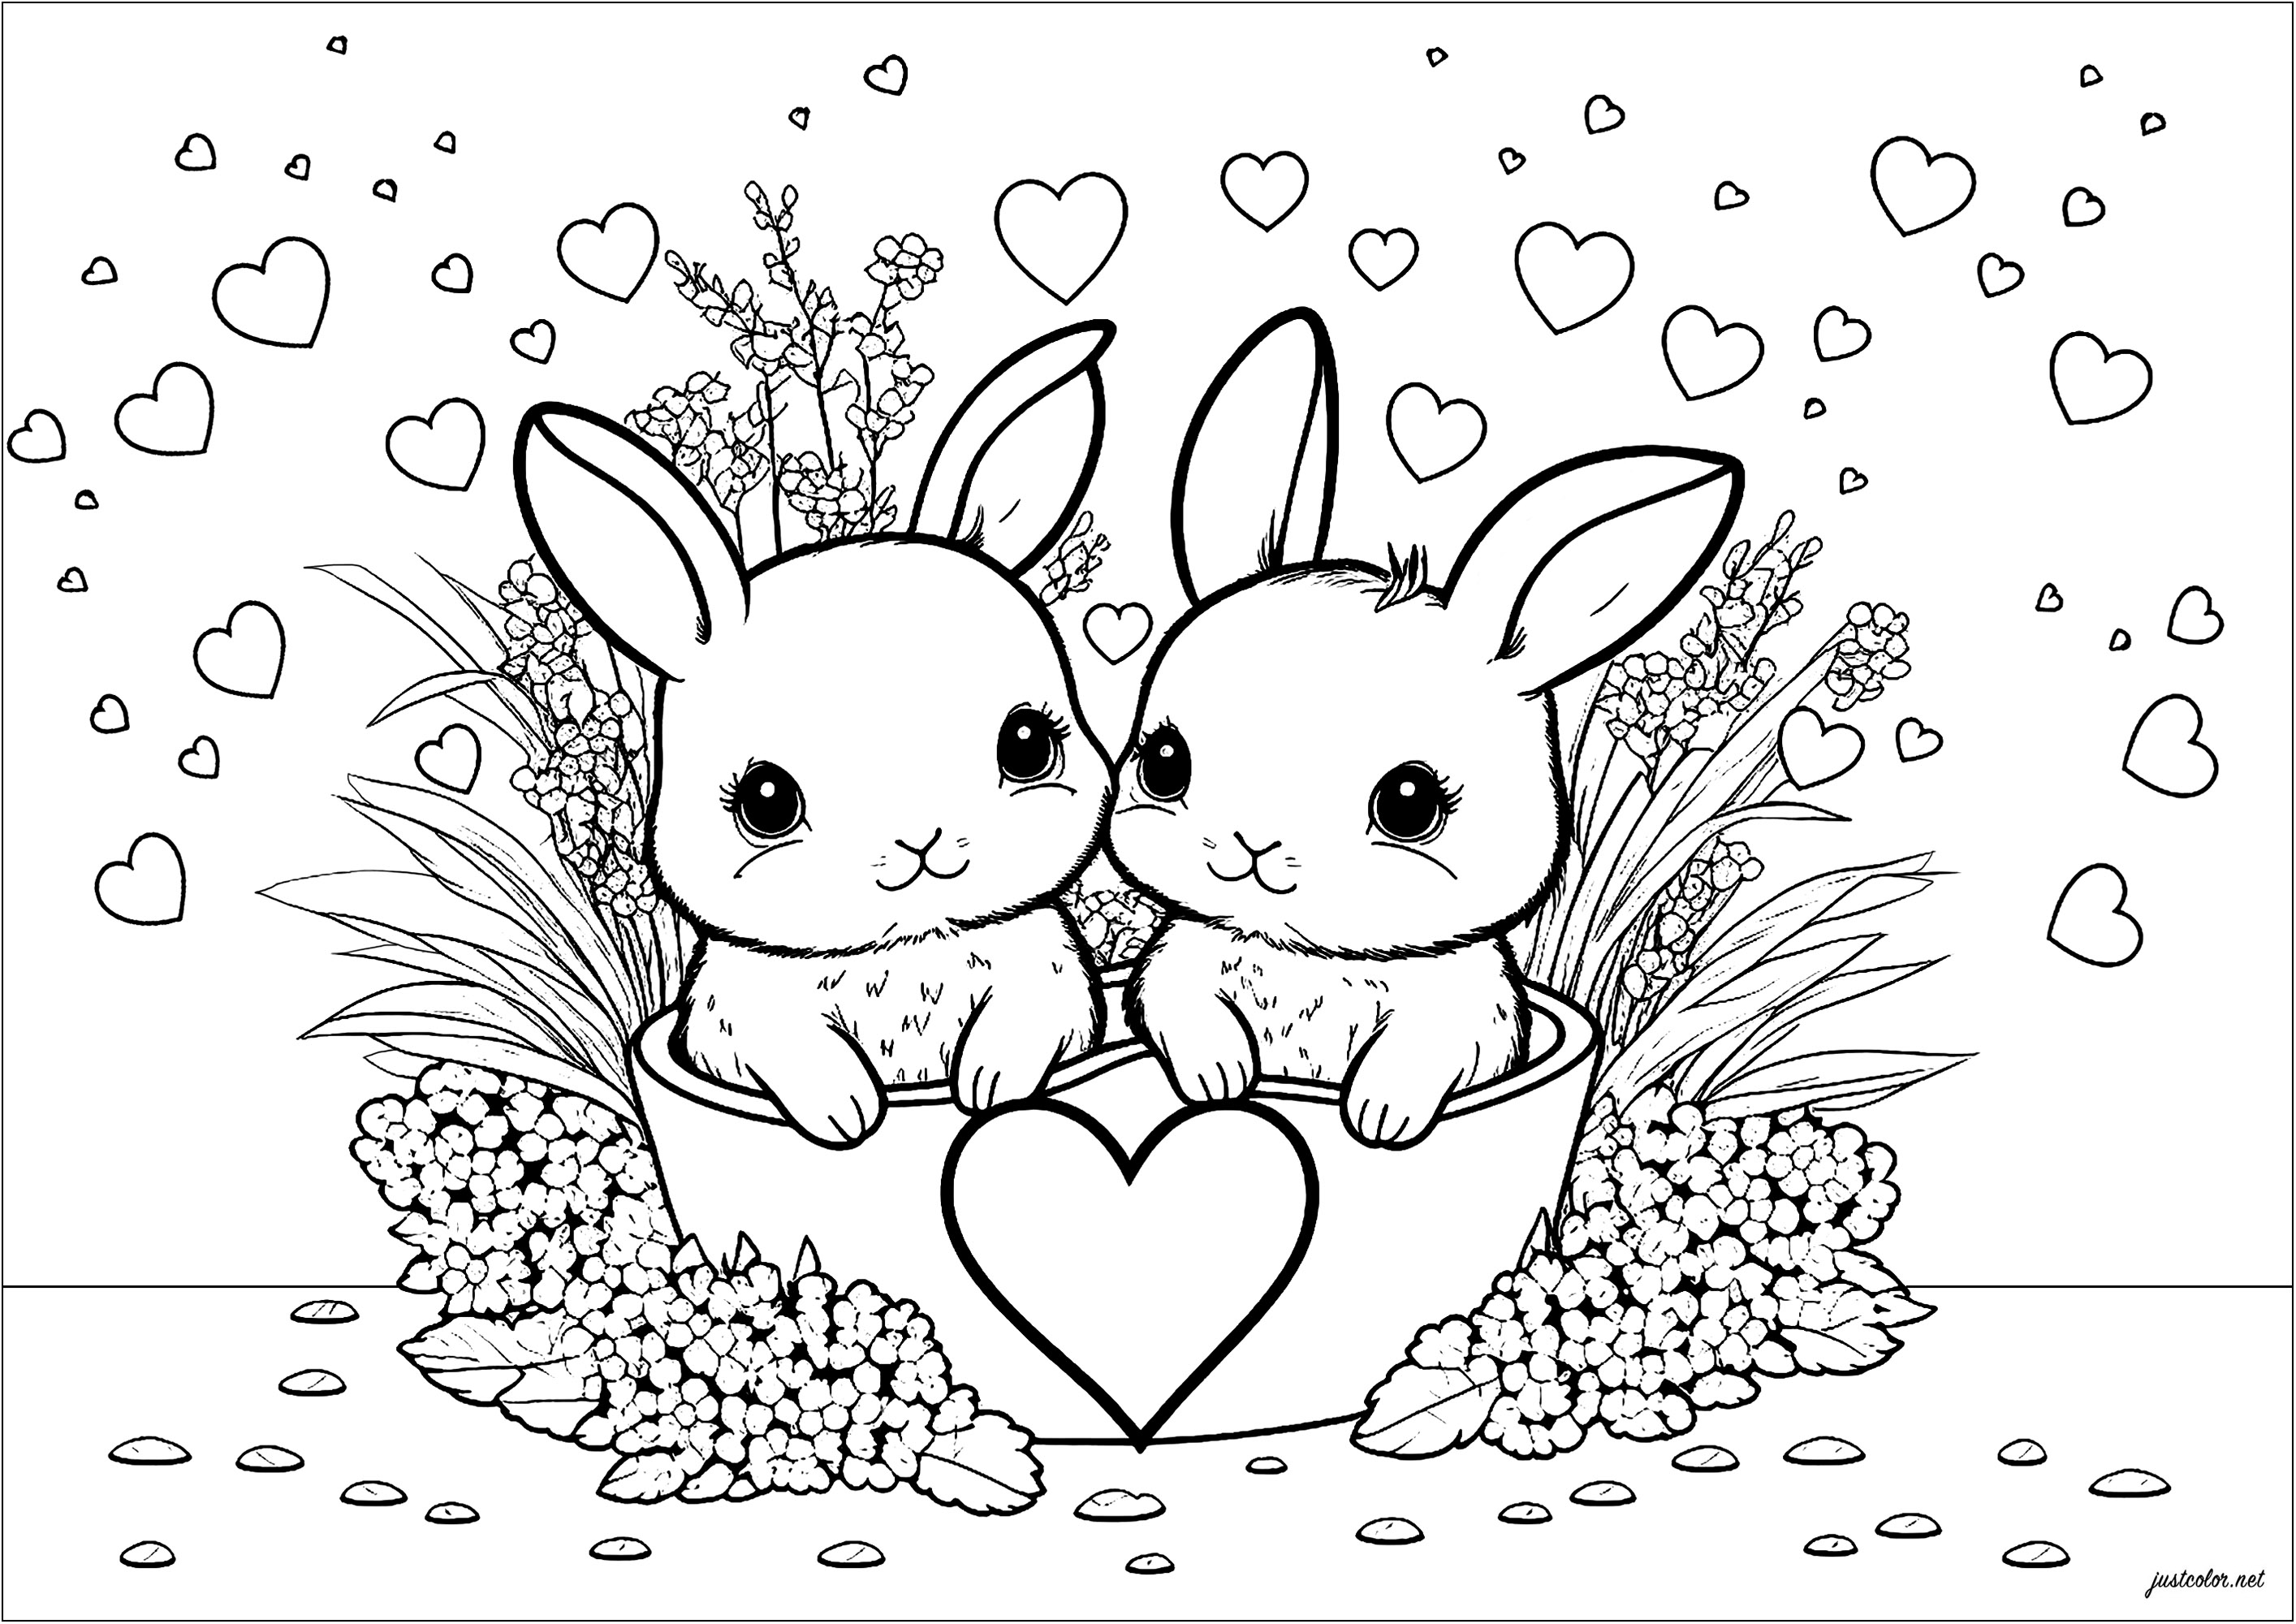 Página para colorir simples com dois coelhos e muitos corações. Esta página para colorir é muito gira e infantil. Apresenta dois coelhinhos rodeados de muitos corações coloridos. Os coelhinhos são muito expressivos e as suas orelhas são grandes e macias.